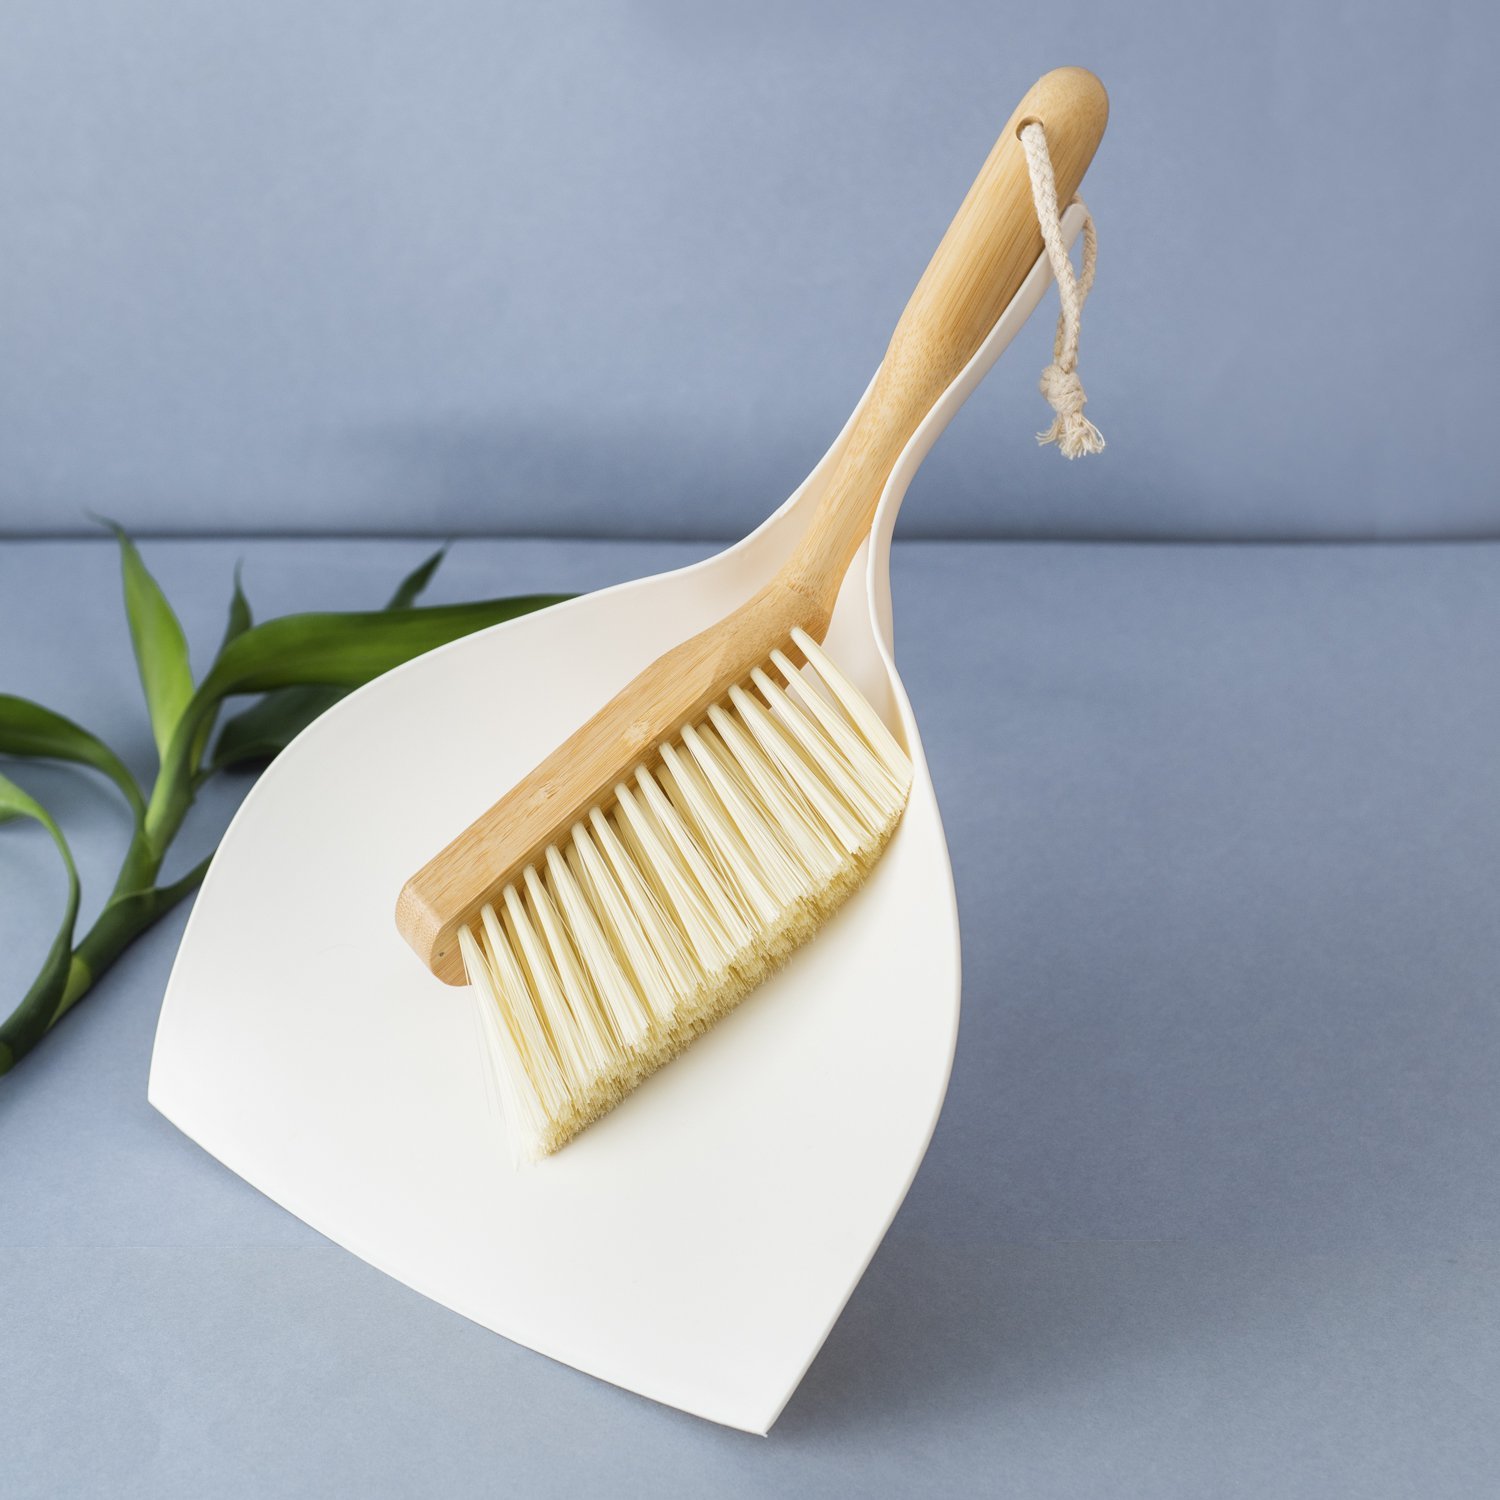 Escova de bambu e pá para limpeza - Oikos - 2